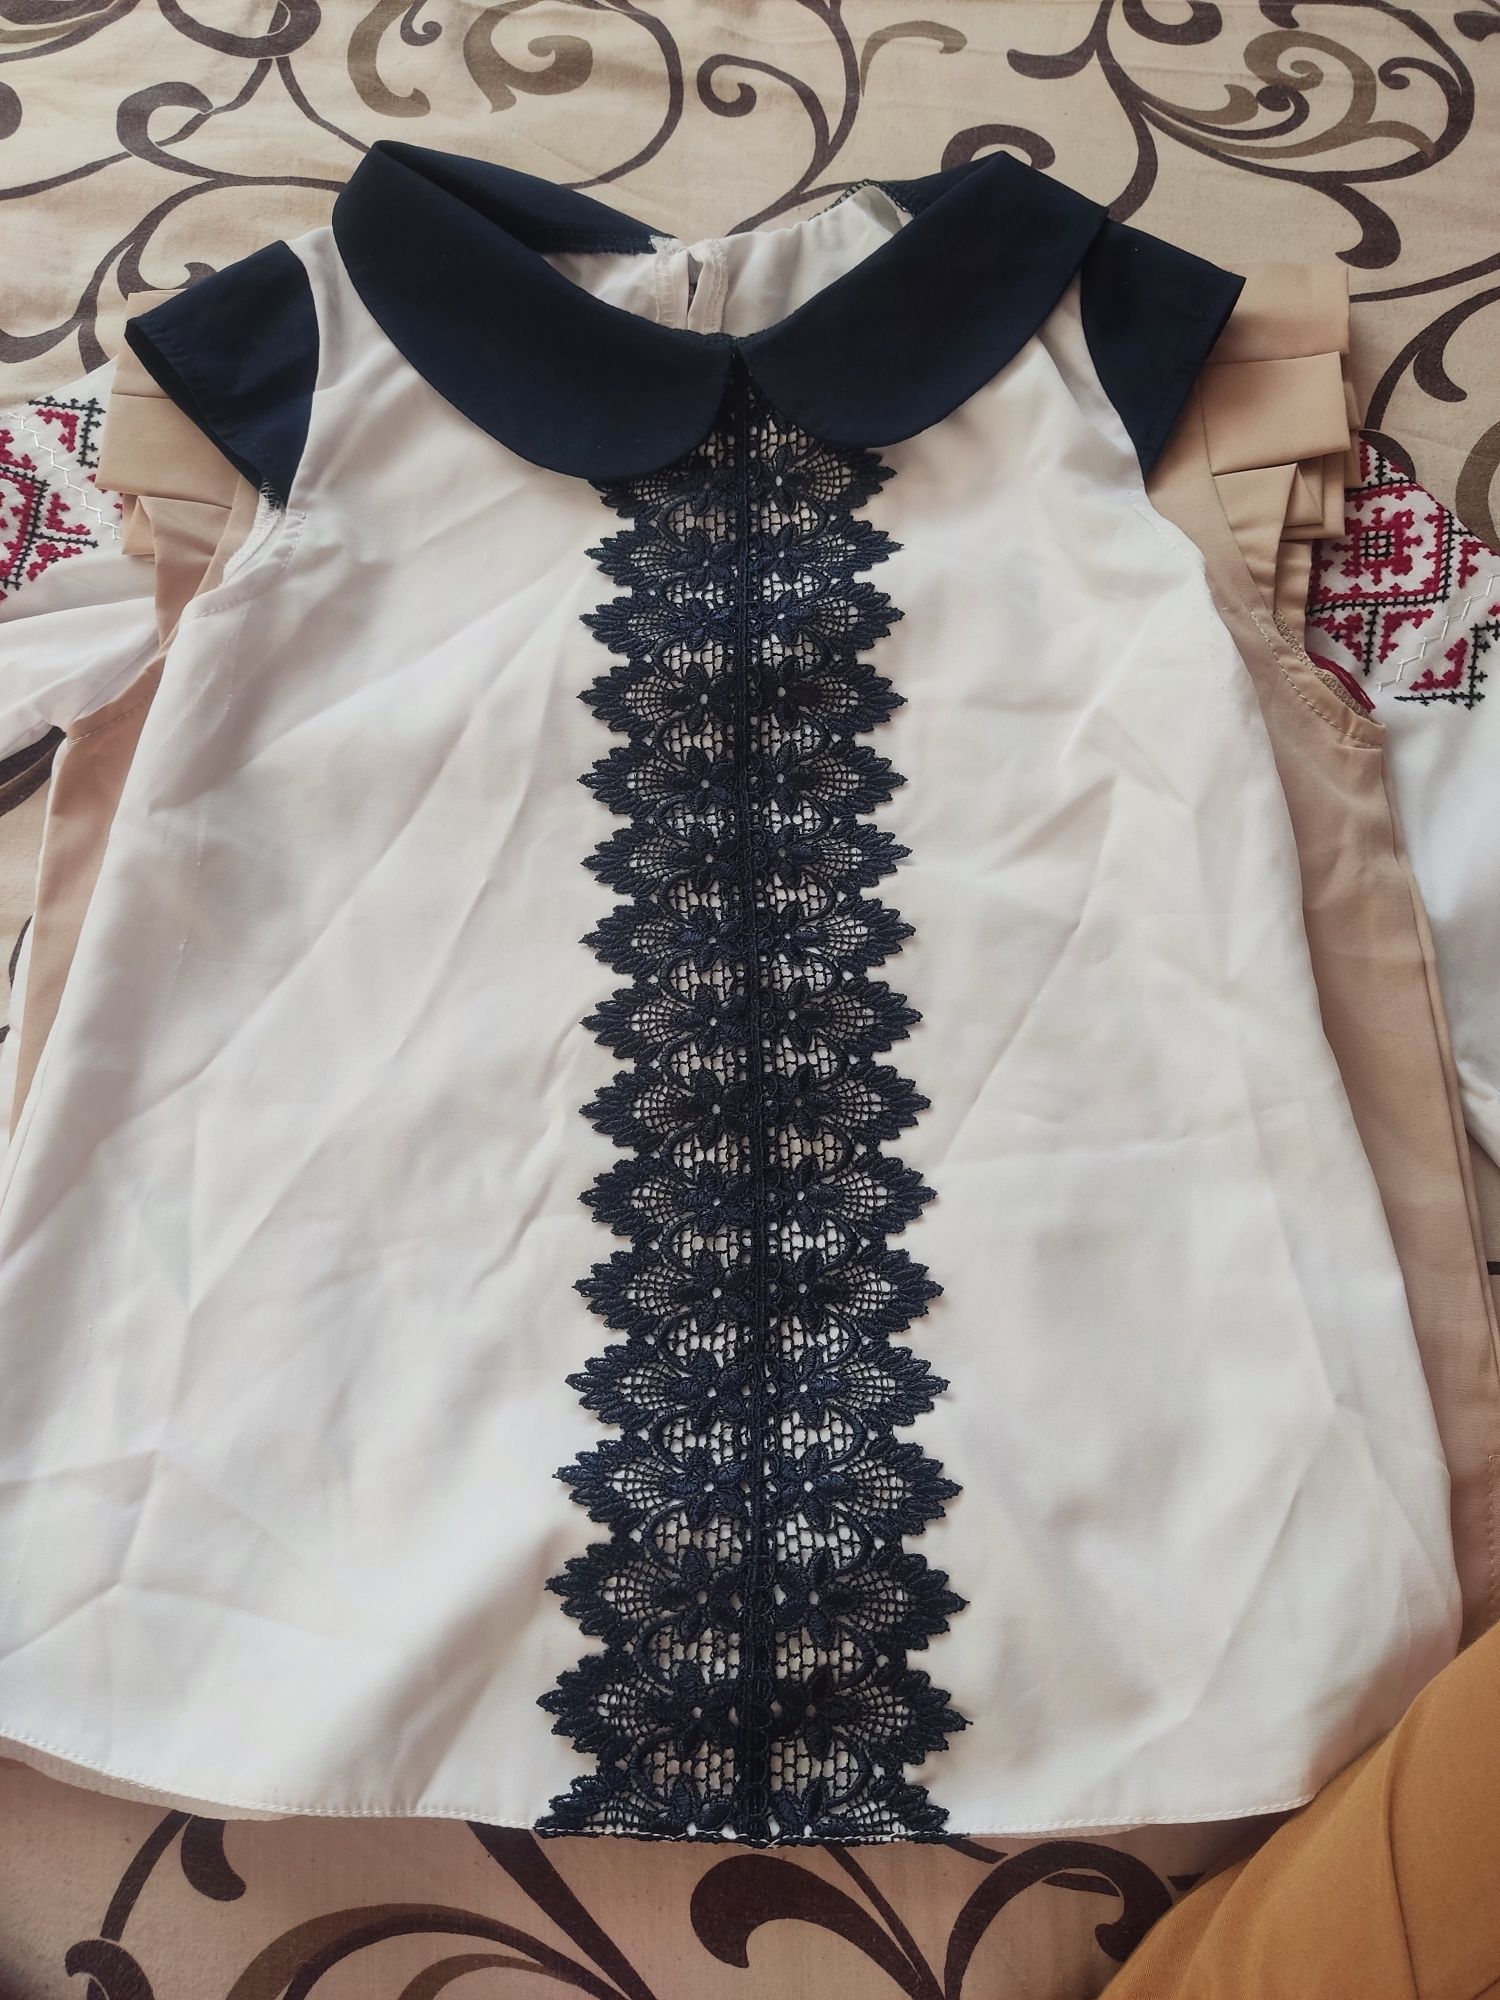 128 см 6-8 лет школьная форма блузка кофта майка вышиванка